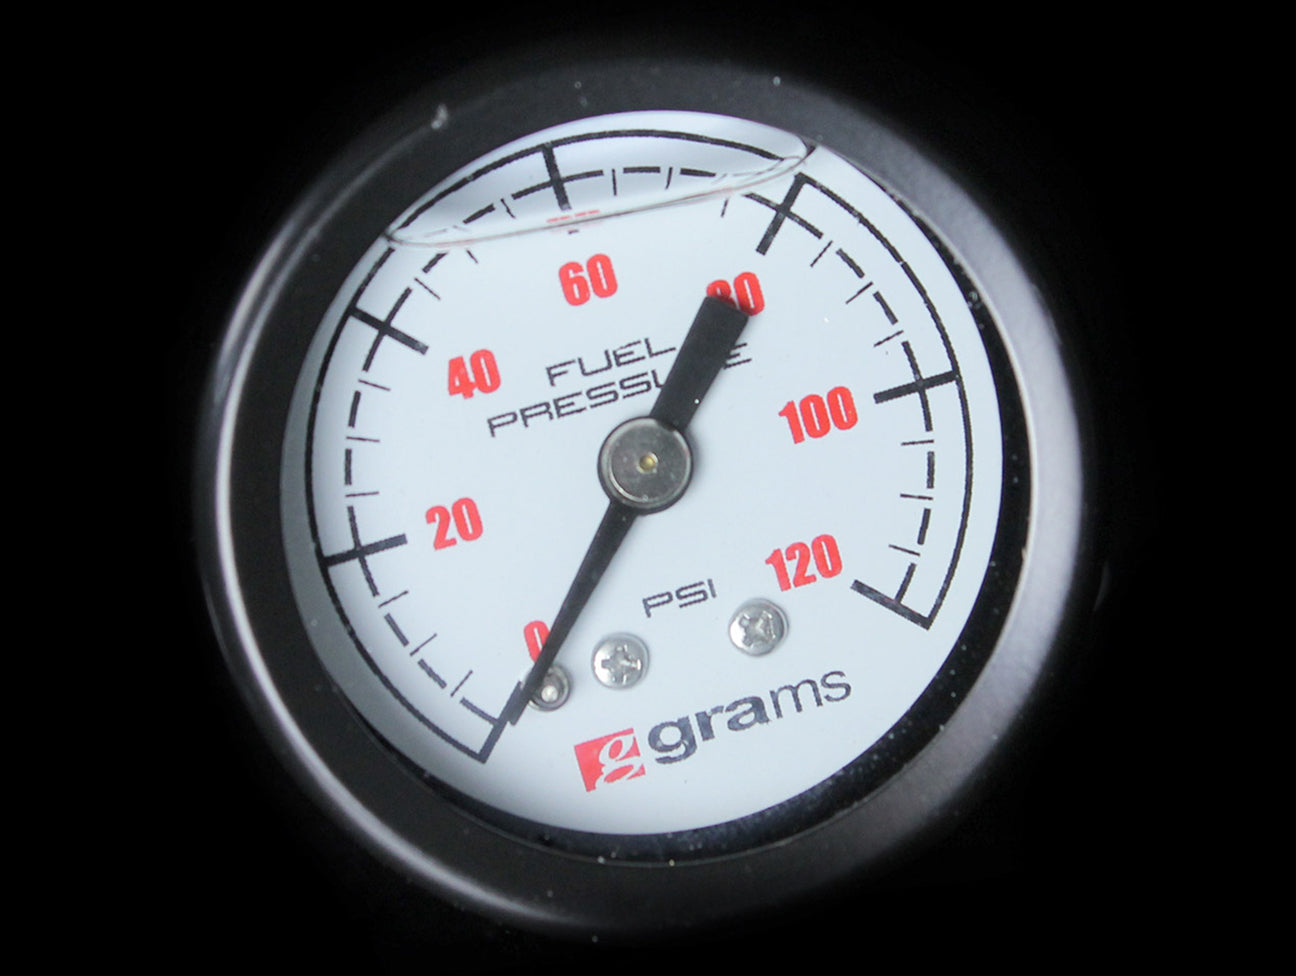 Grams Liquid Filled Fuel Pressure Gauge (White Face) - 0-120psi